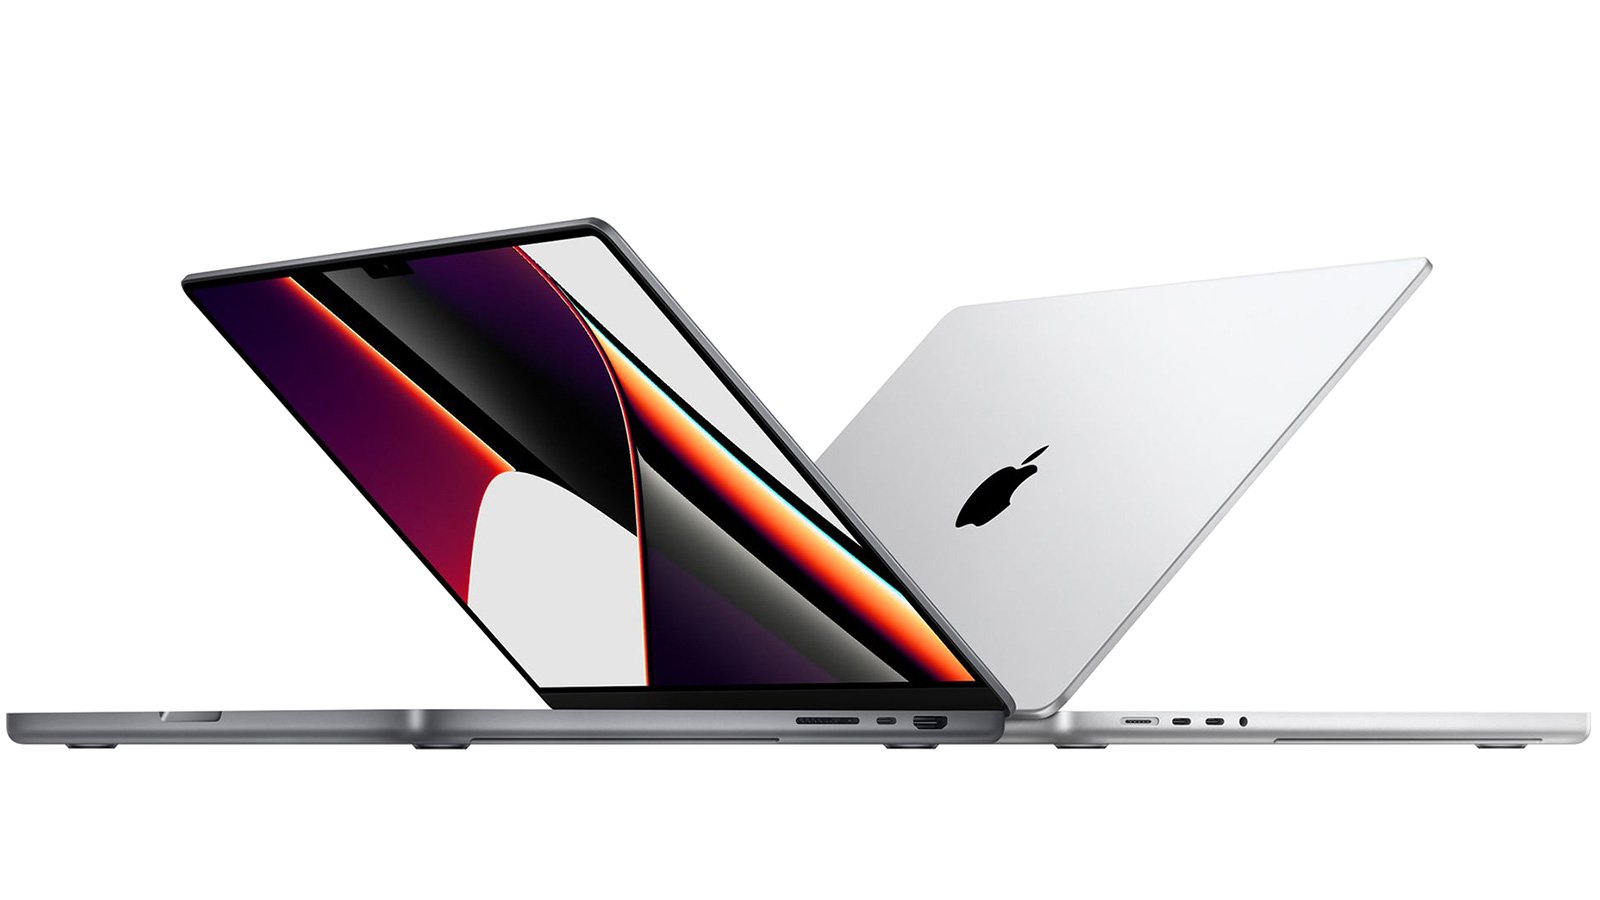 Khám phá chiếc MacBook Pro 16 Inch 2021 với màn hình cực kỳ sắc nét và tuyệt vời hơn nữa khi kết hợp với những hình nền đẹp mắt.